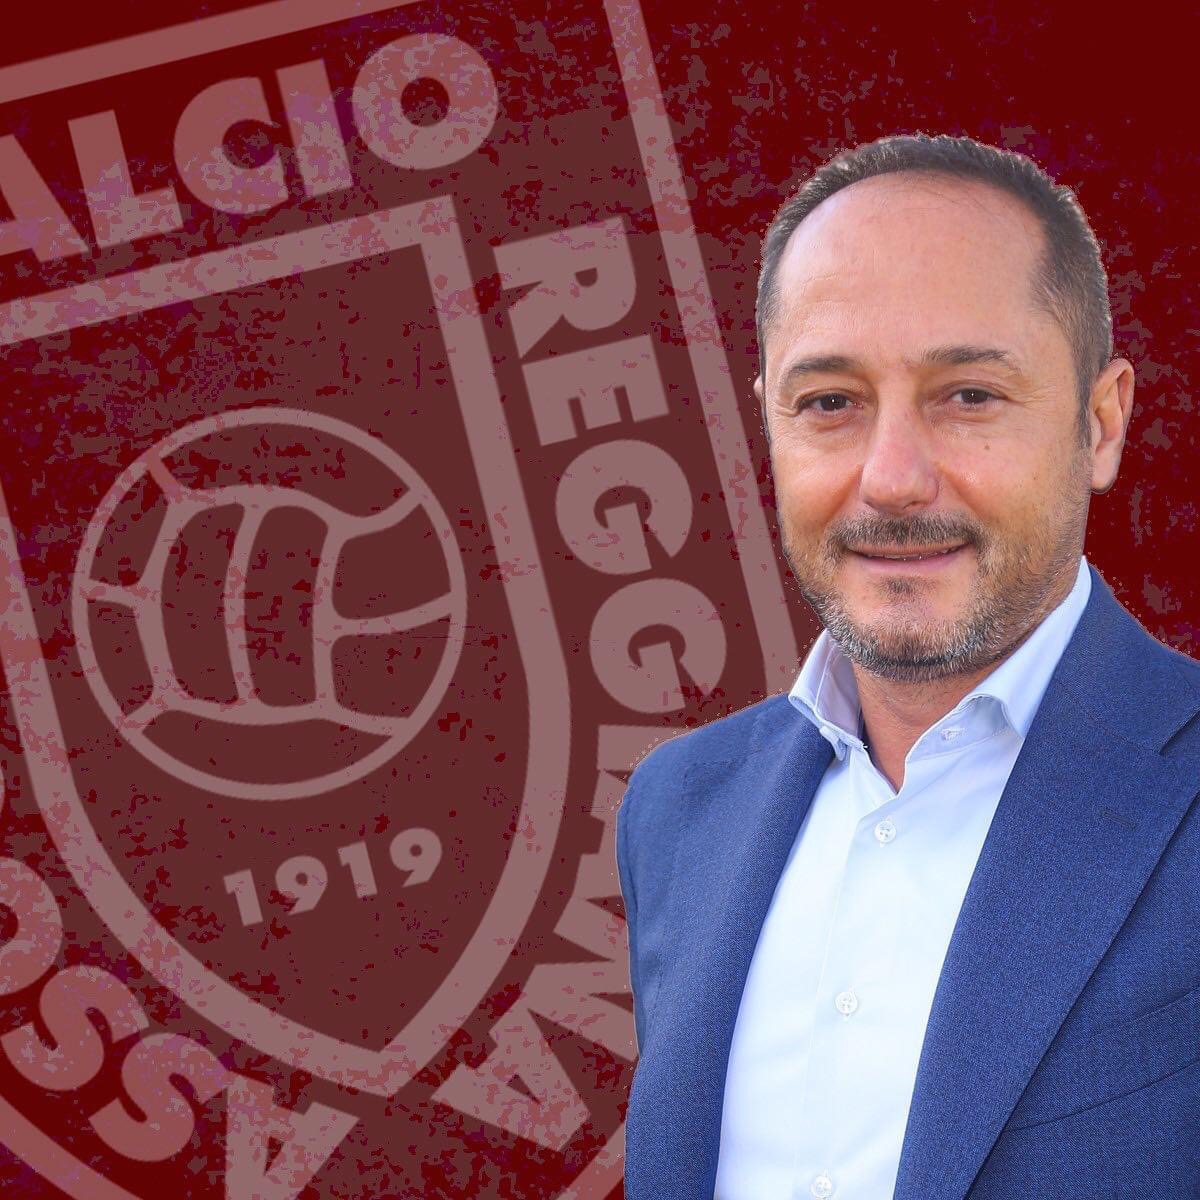 Il presidente Salerno: “Sappiamo ancora vincere”